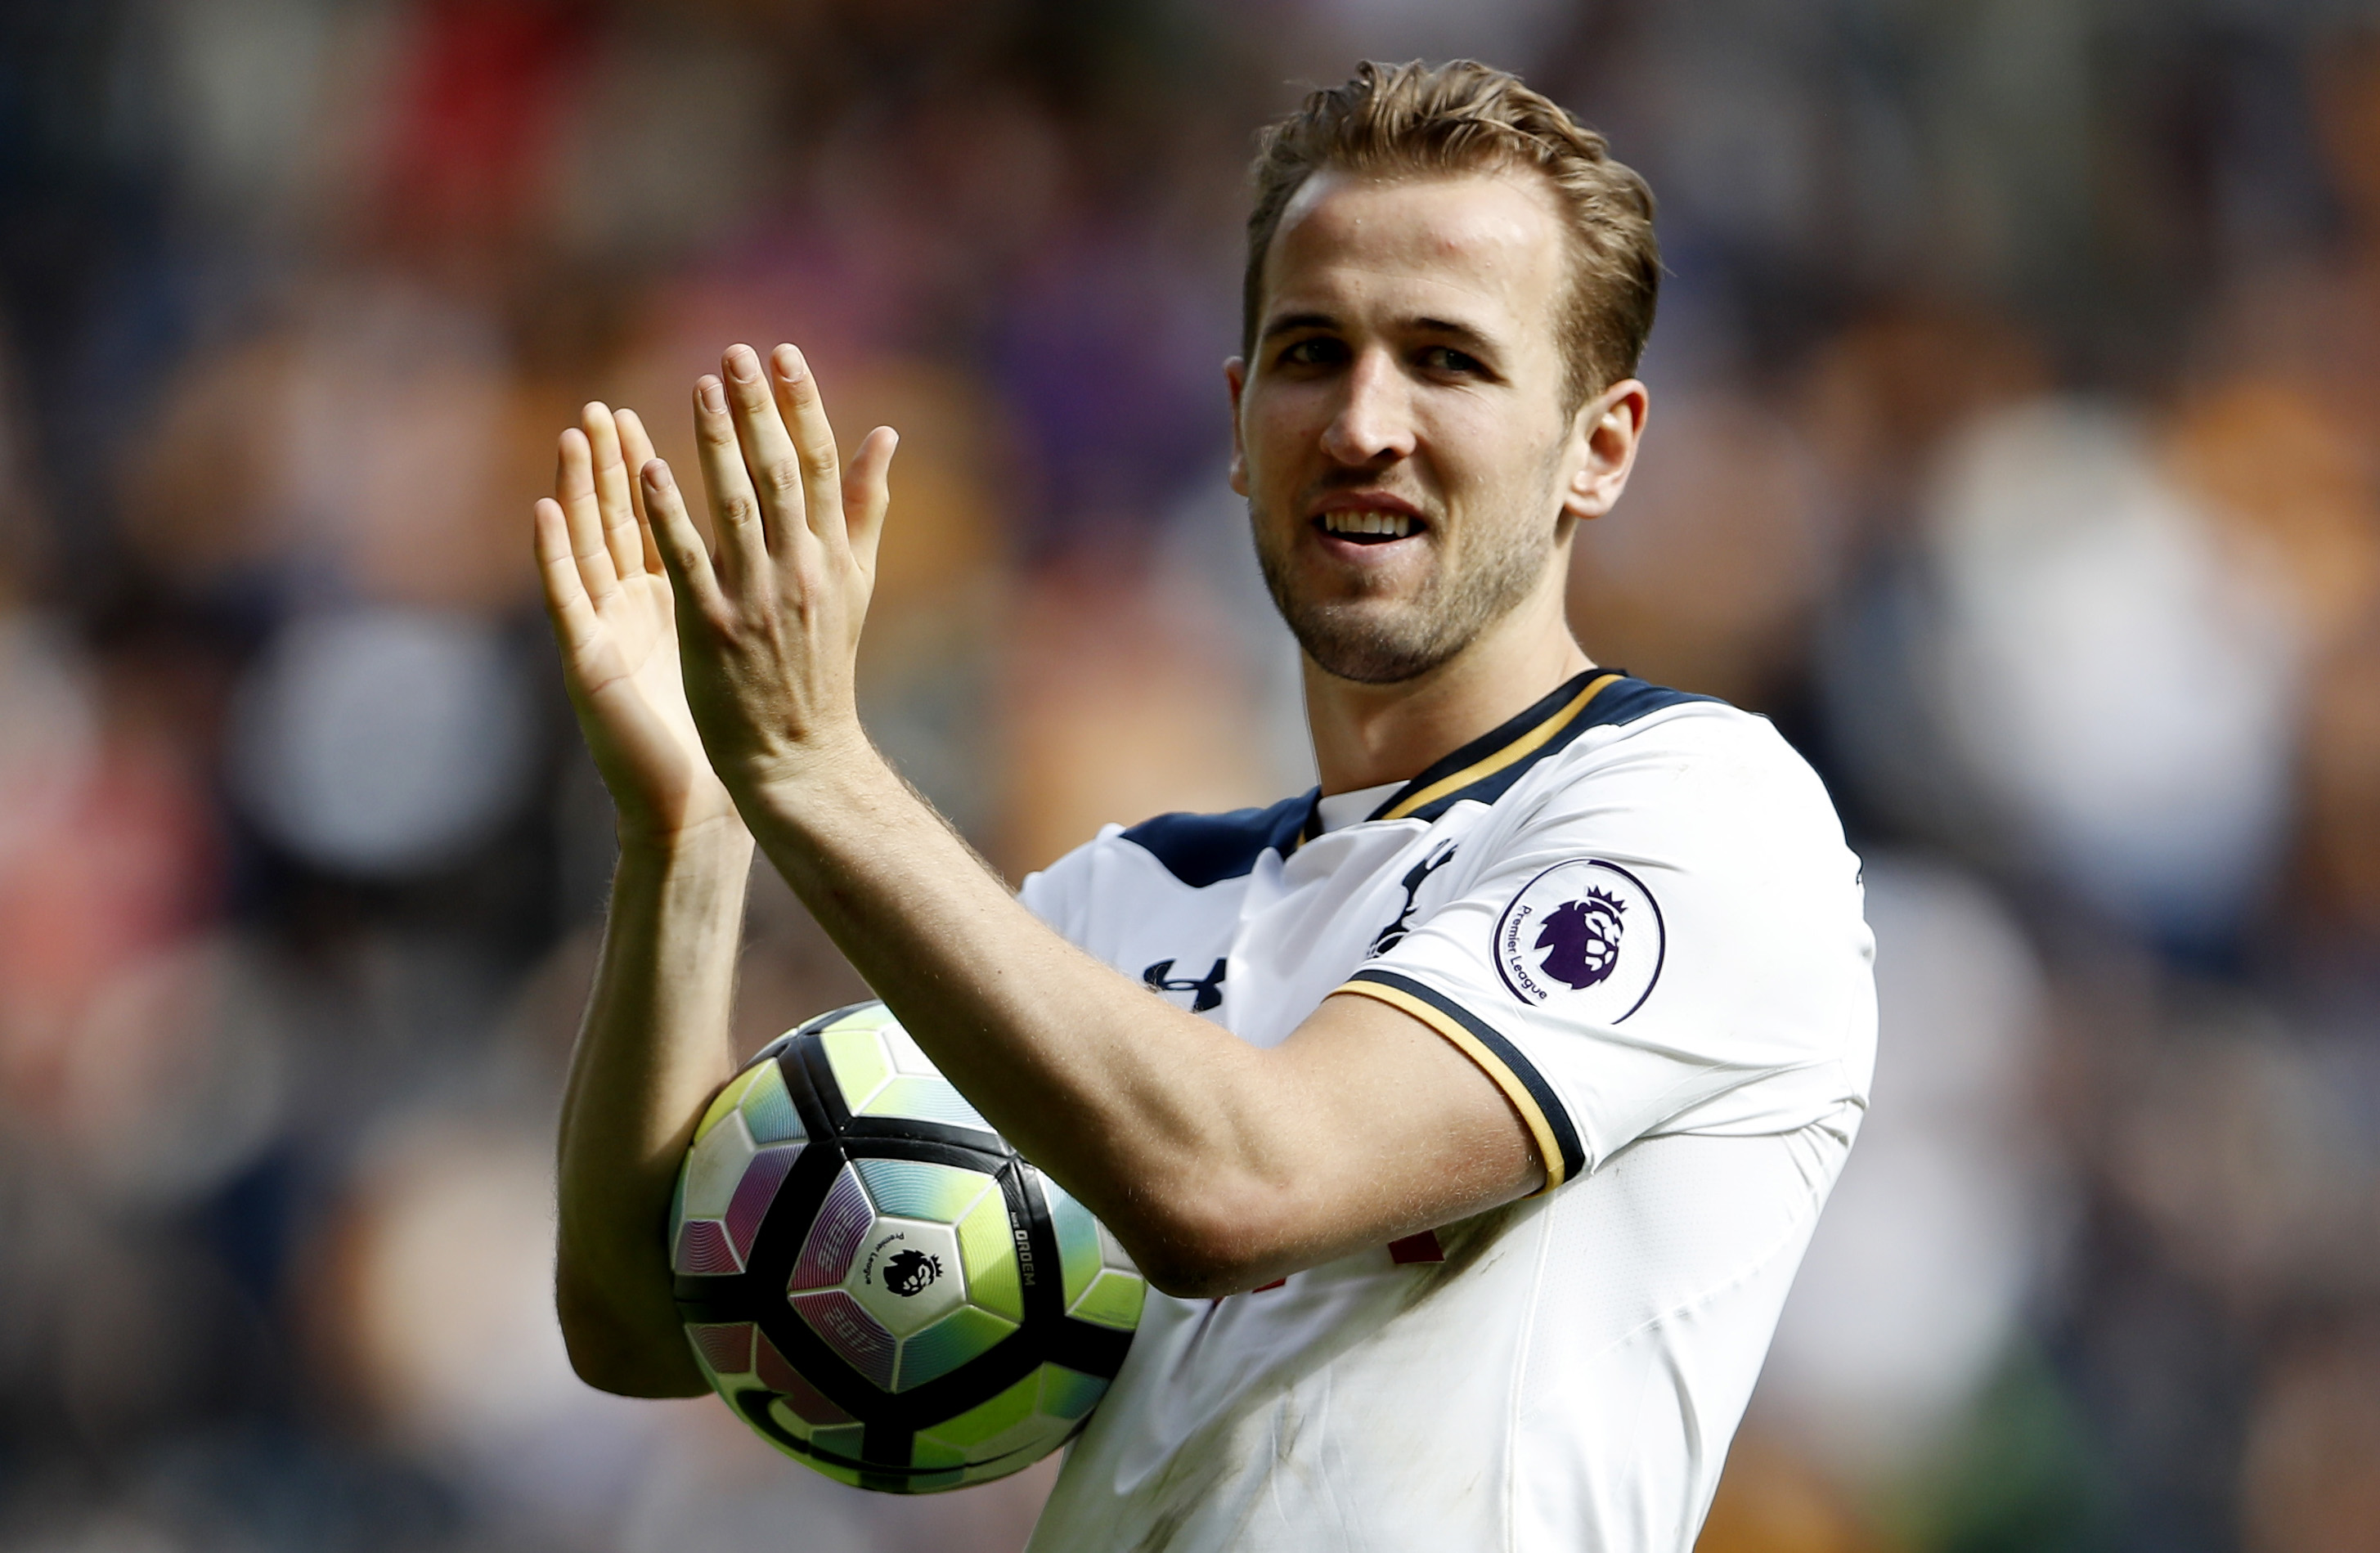 Football: Tottenham's Kane wins Golden Boot in 7-1 romp